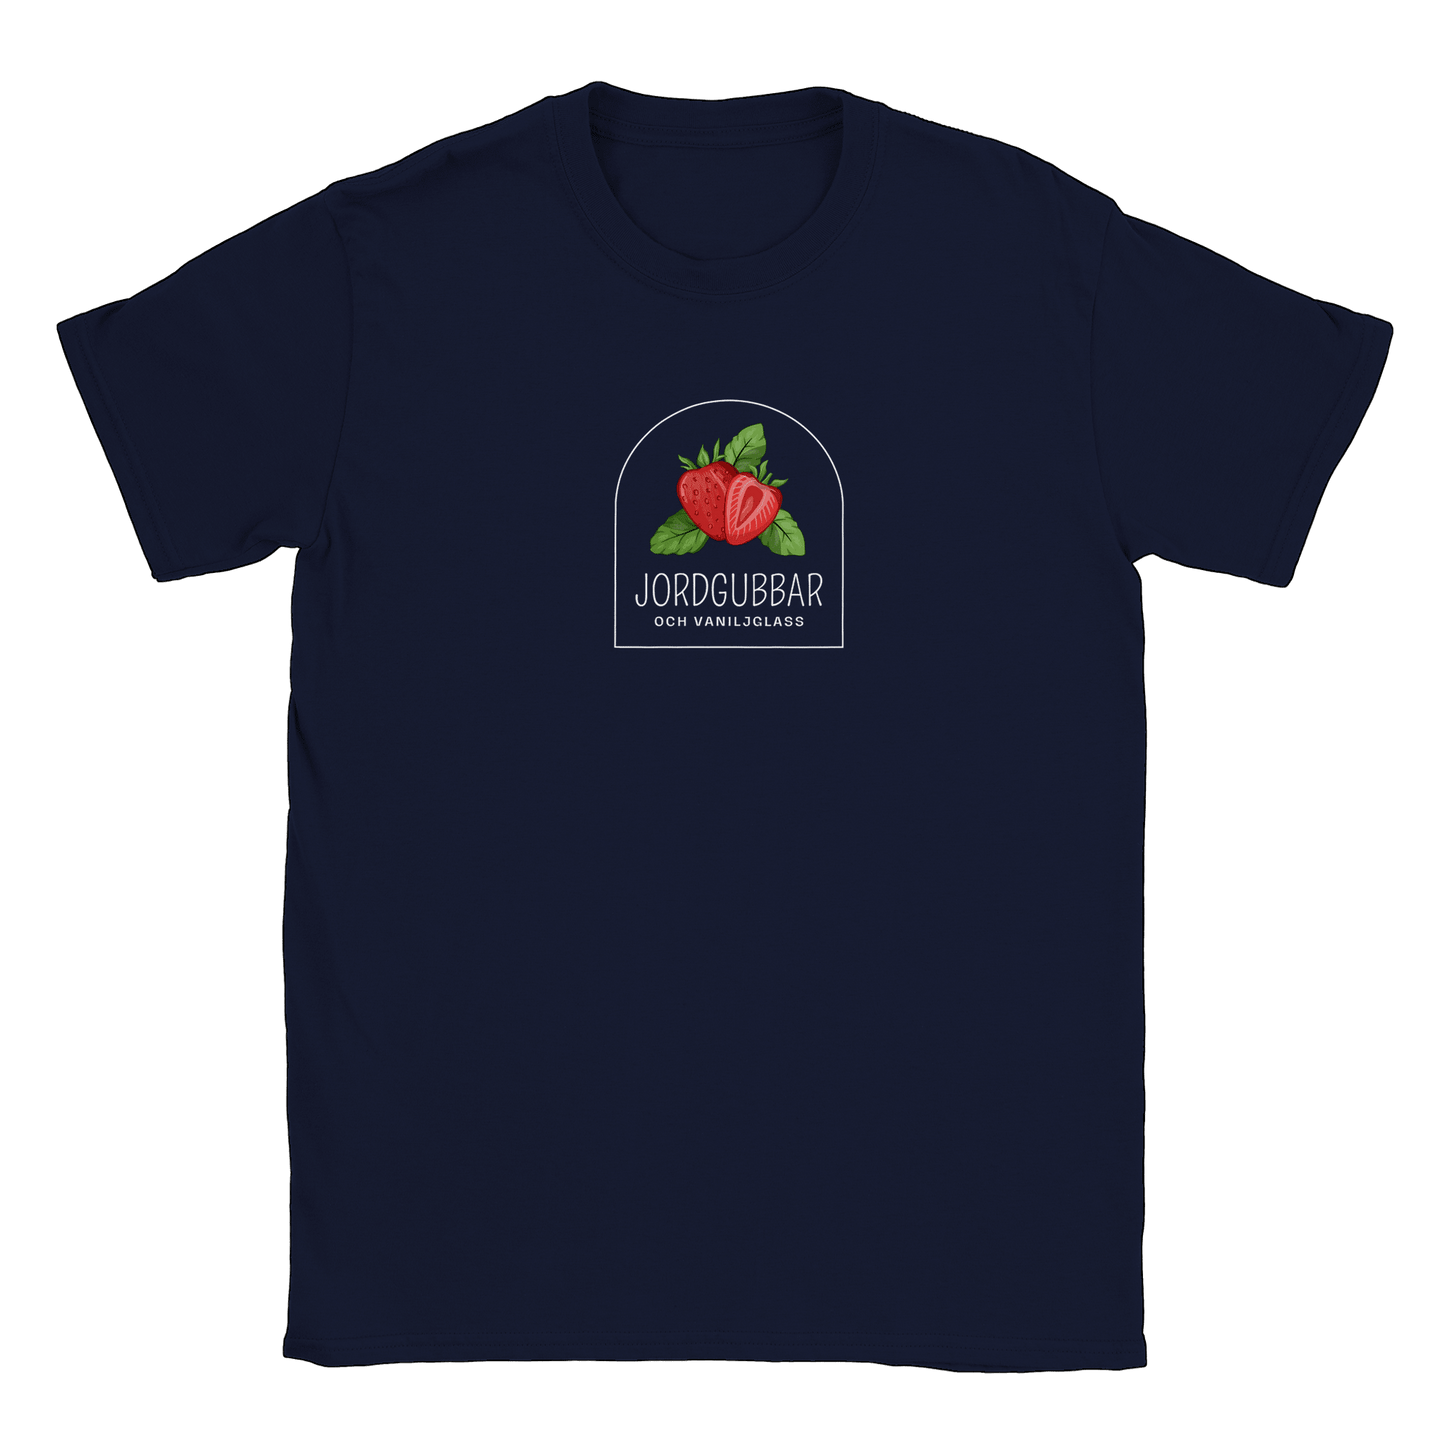 Jordgubbar och vaniljglass - T-shirt Navy